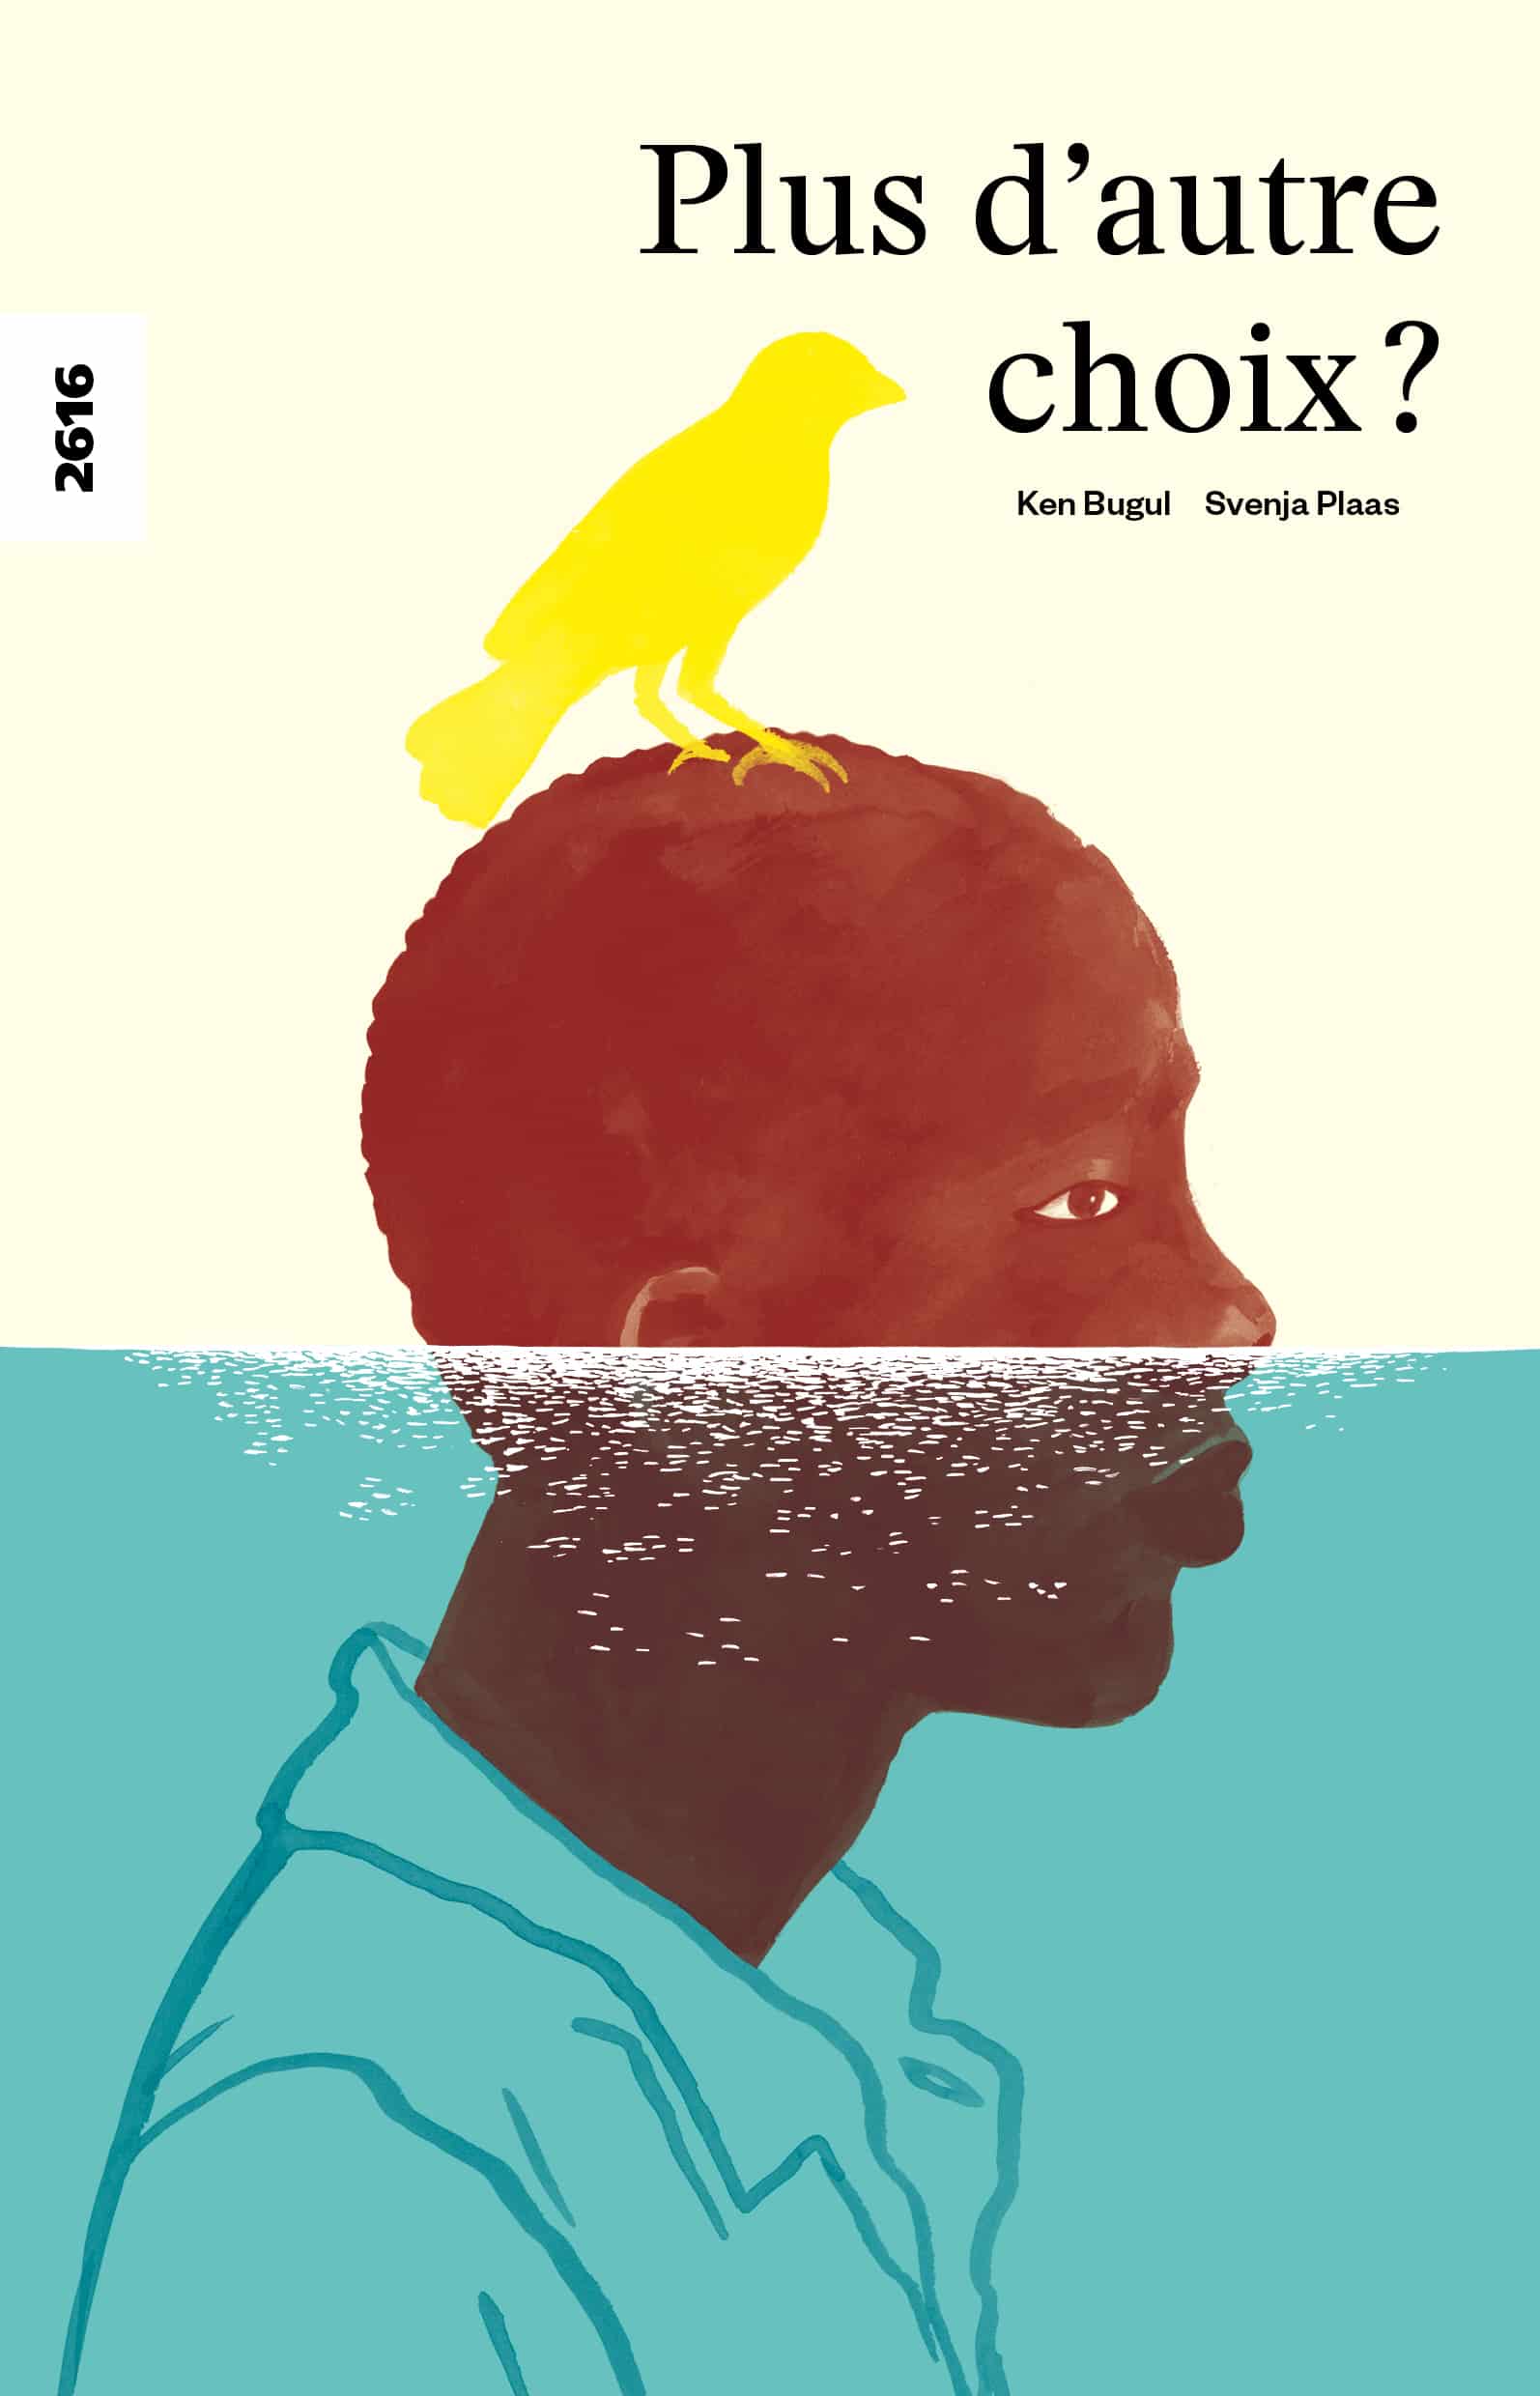 Plus d'autre choix?, un livre de Ken Bugul, illustré par Svenja Plaas, éditions de l'OSL, migration, Sénégal, climat